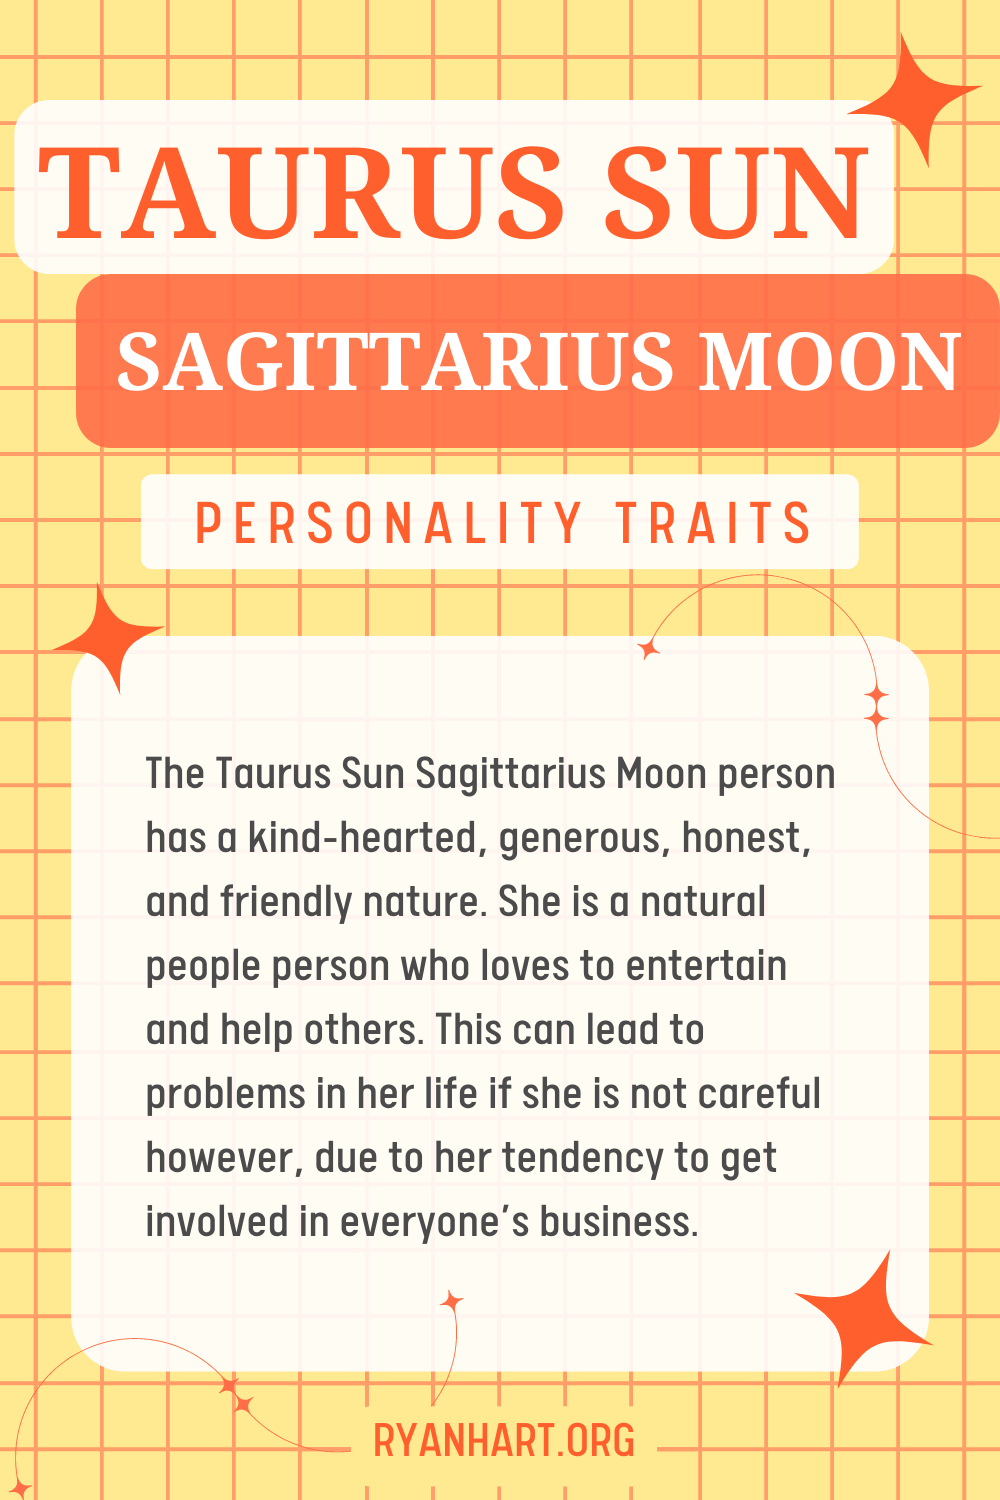 Taurus Sun Sagittarius Moon Description